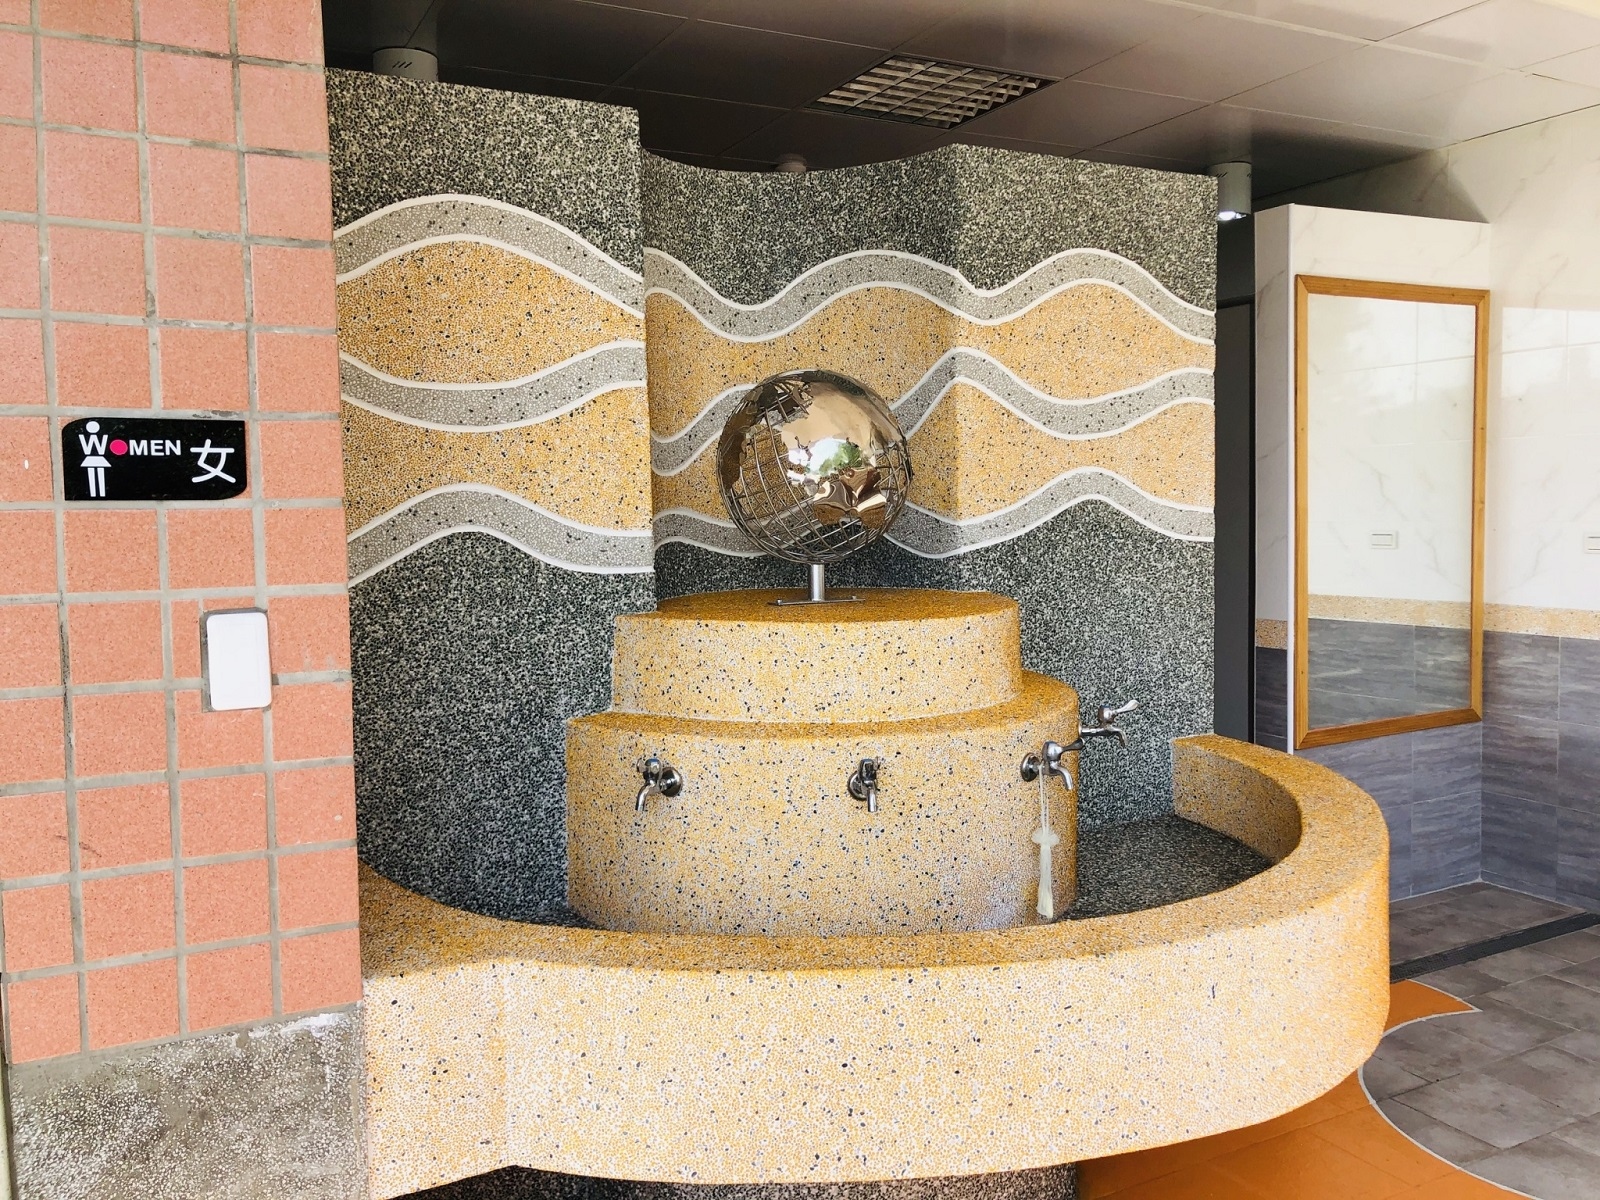 廁所外觀設置地球儀裝置藝術，並在牆上鑲嵌波浪紋琉璃石增添特色。圖／台中市教育局提供